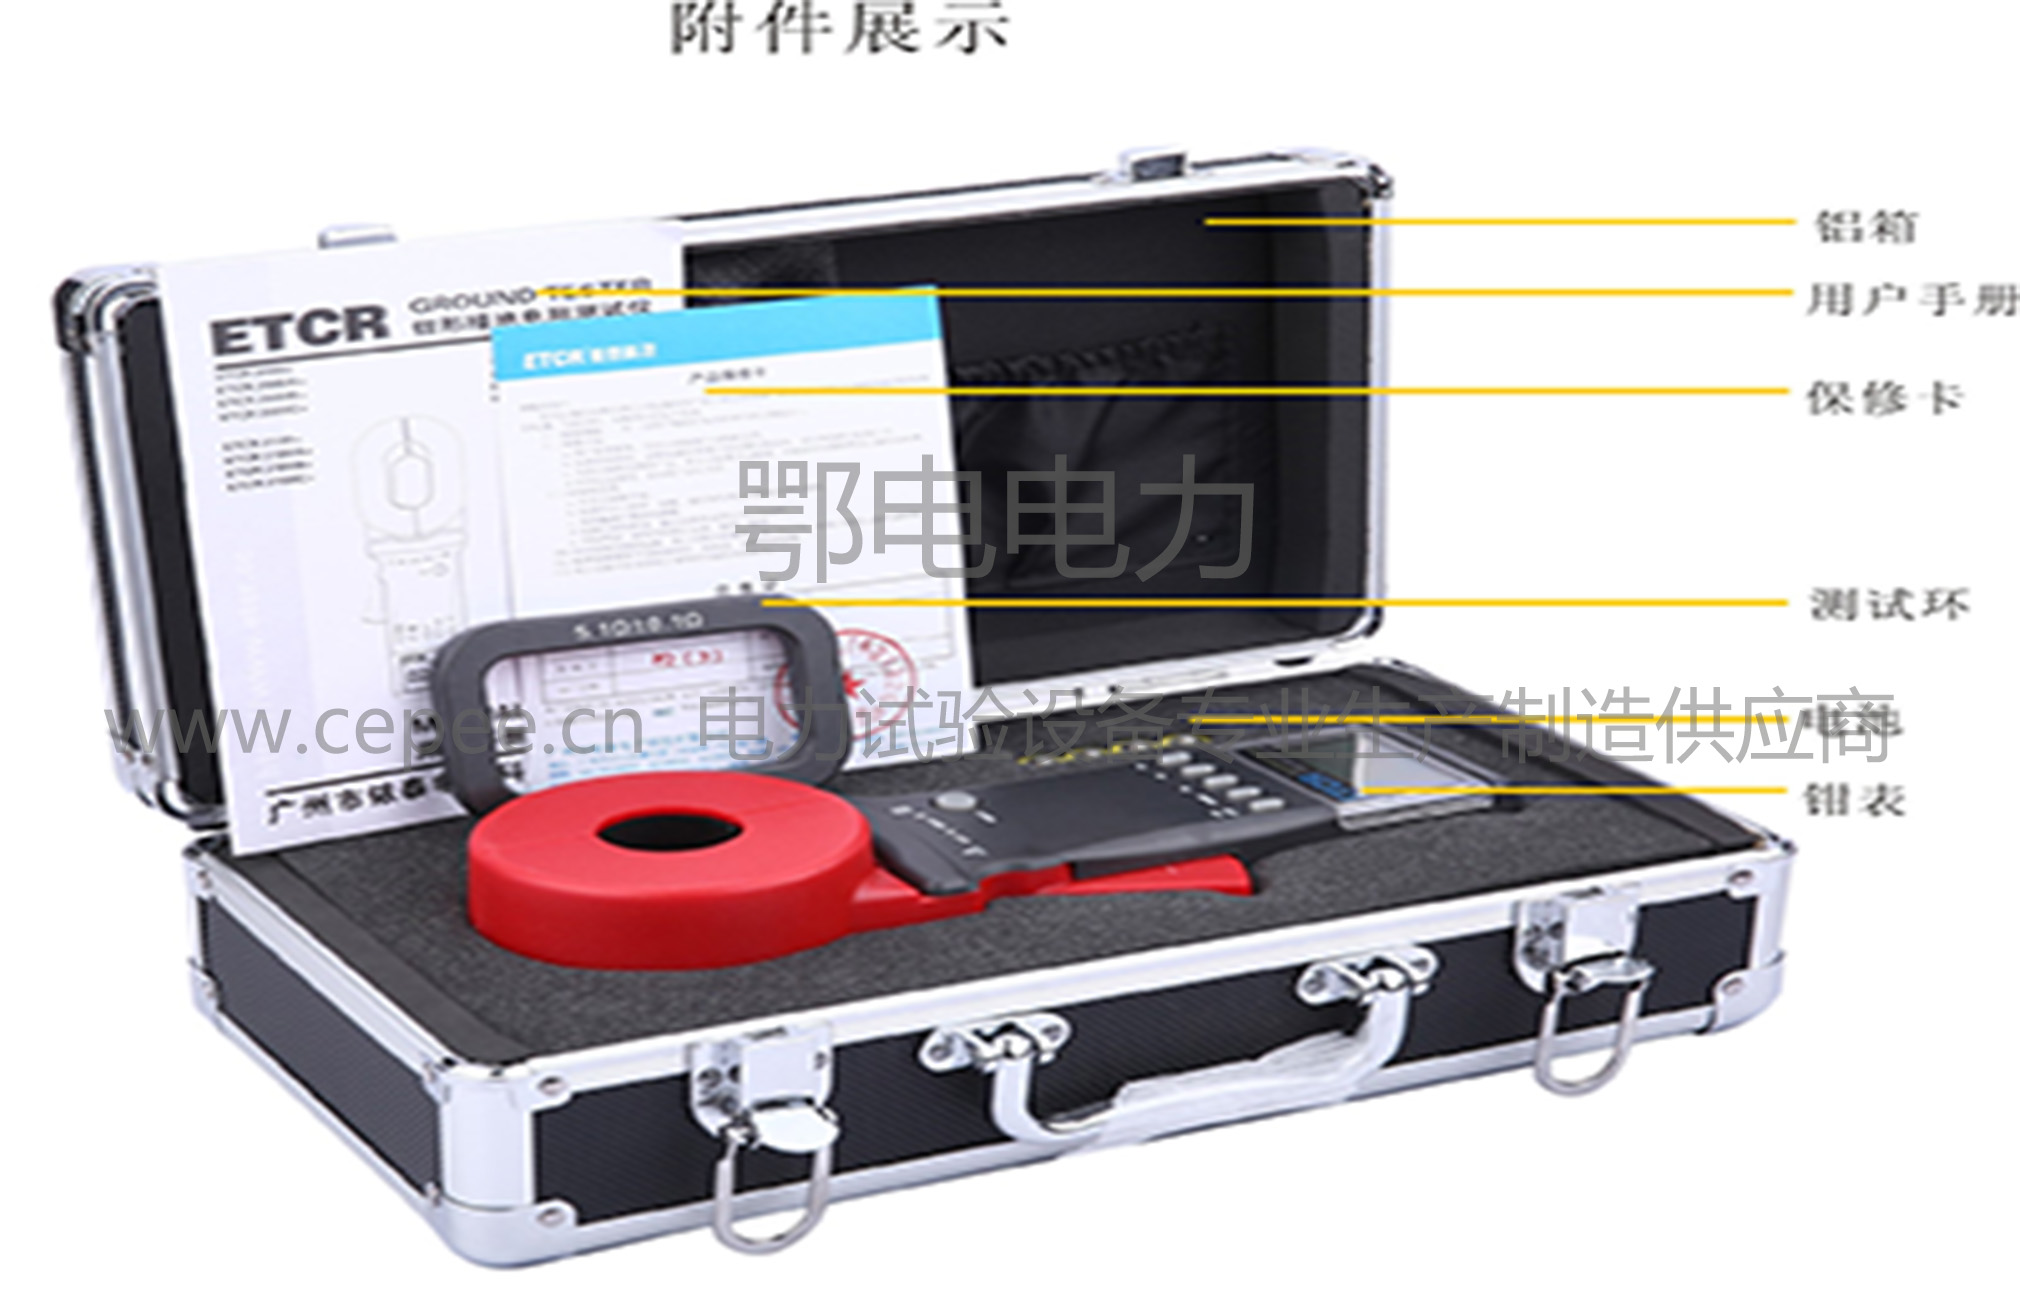 包装	外包装	纸箱 	内包装	铝箱 附件	仪表	一台 	铝箱	一个 	测试环	一个 	5号电池	4节 	说明书	一本 	合格证	一张 	保修卡	一张